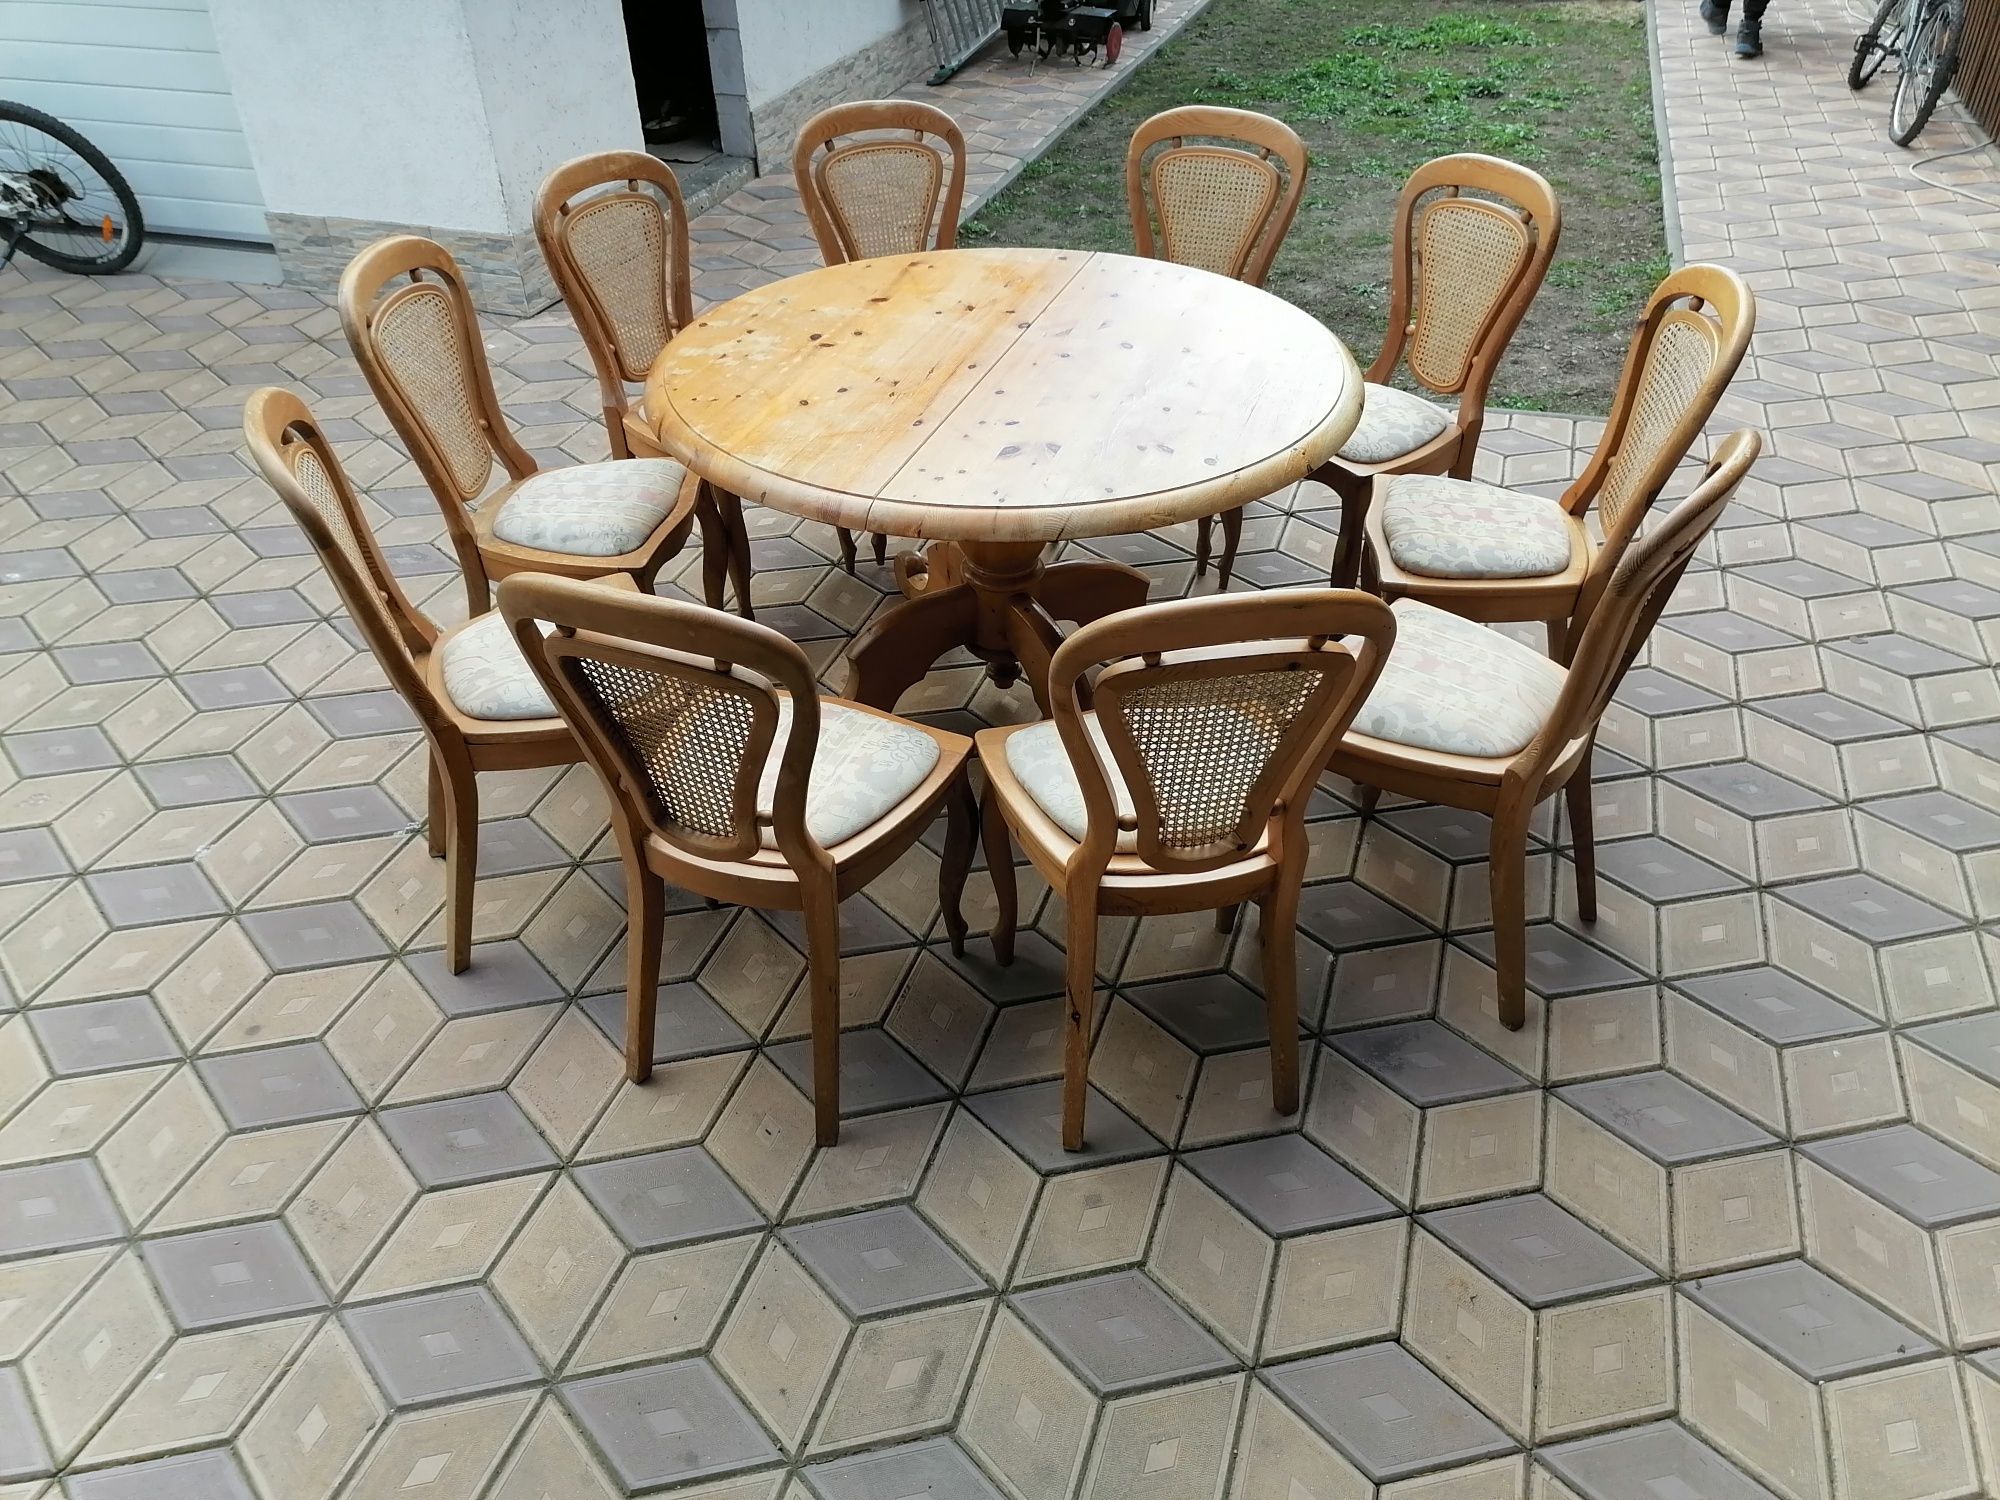 Vând setul complet masa + 10 scaune